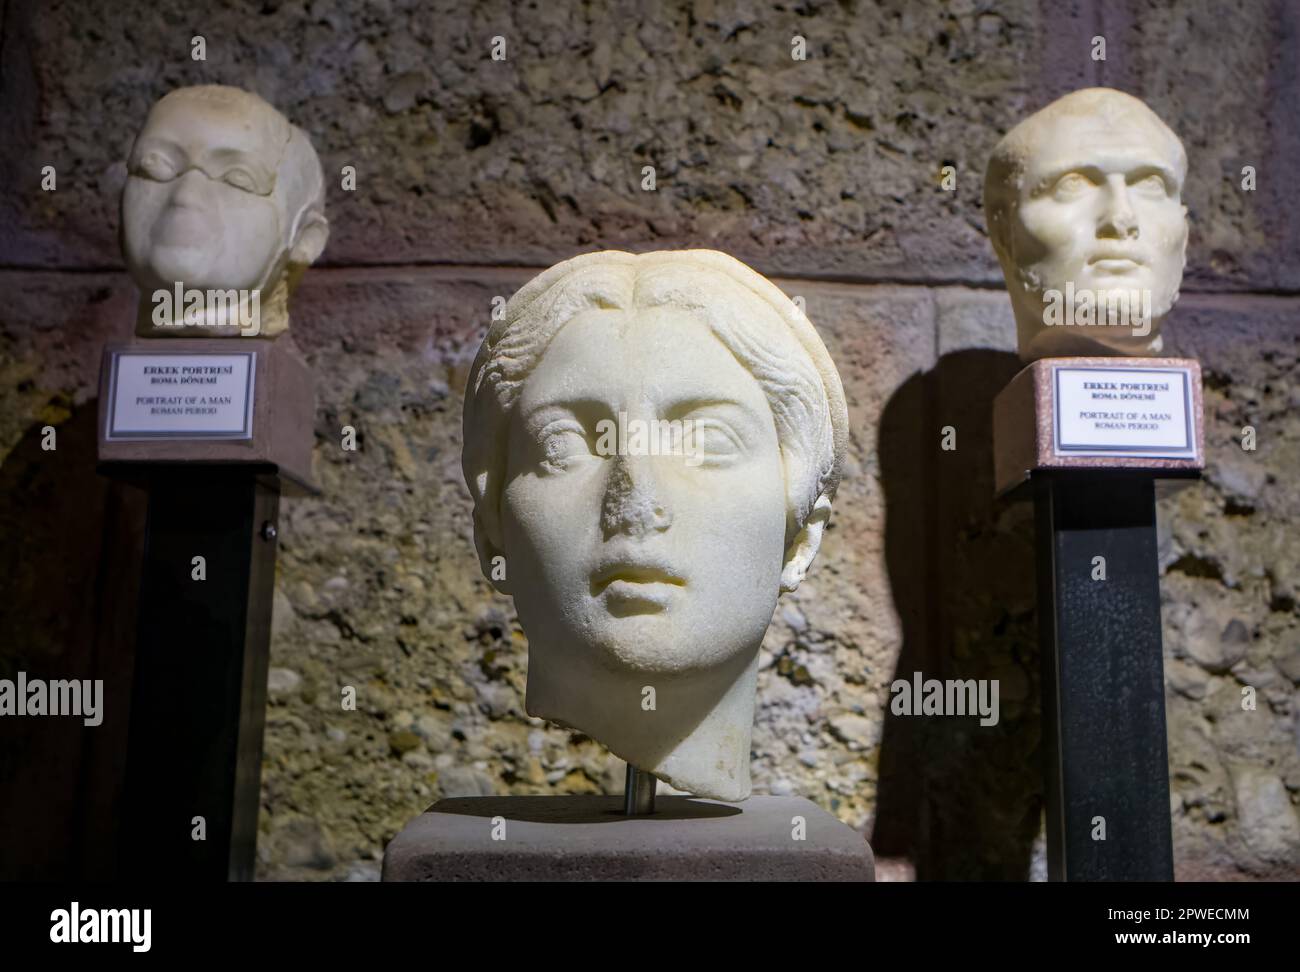 Una testa di marmo scolpita del 2nd ° secolo d.C. di una donna, fiancheggiata da due teste scolpite di uomini, in mostra nel Side Museum, provincia di Antalya, Turchia (Turkiye). Il Foto Stock